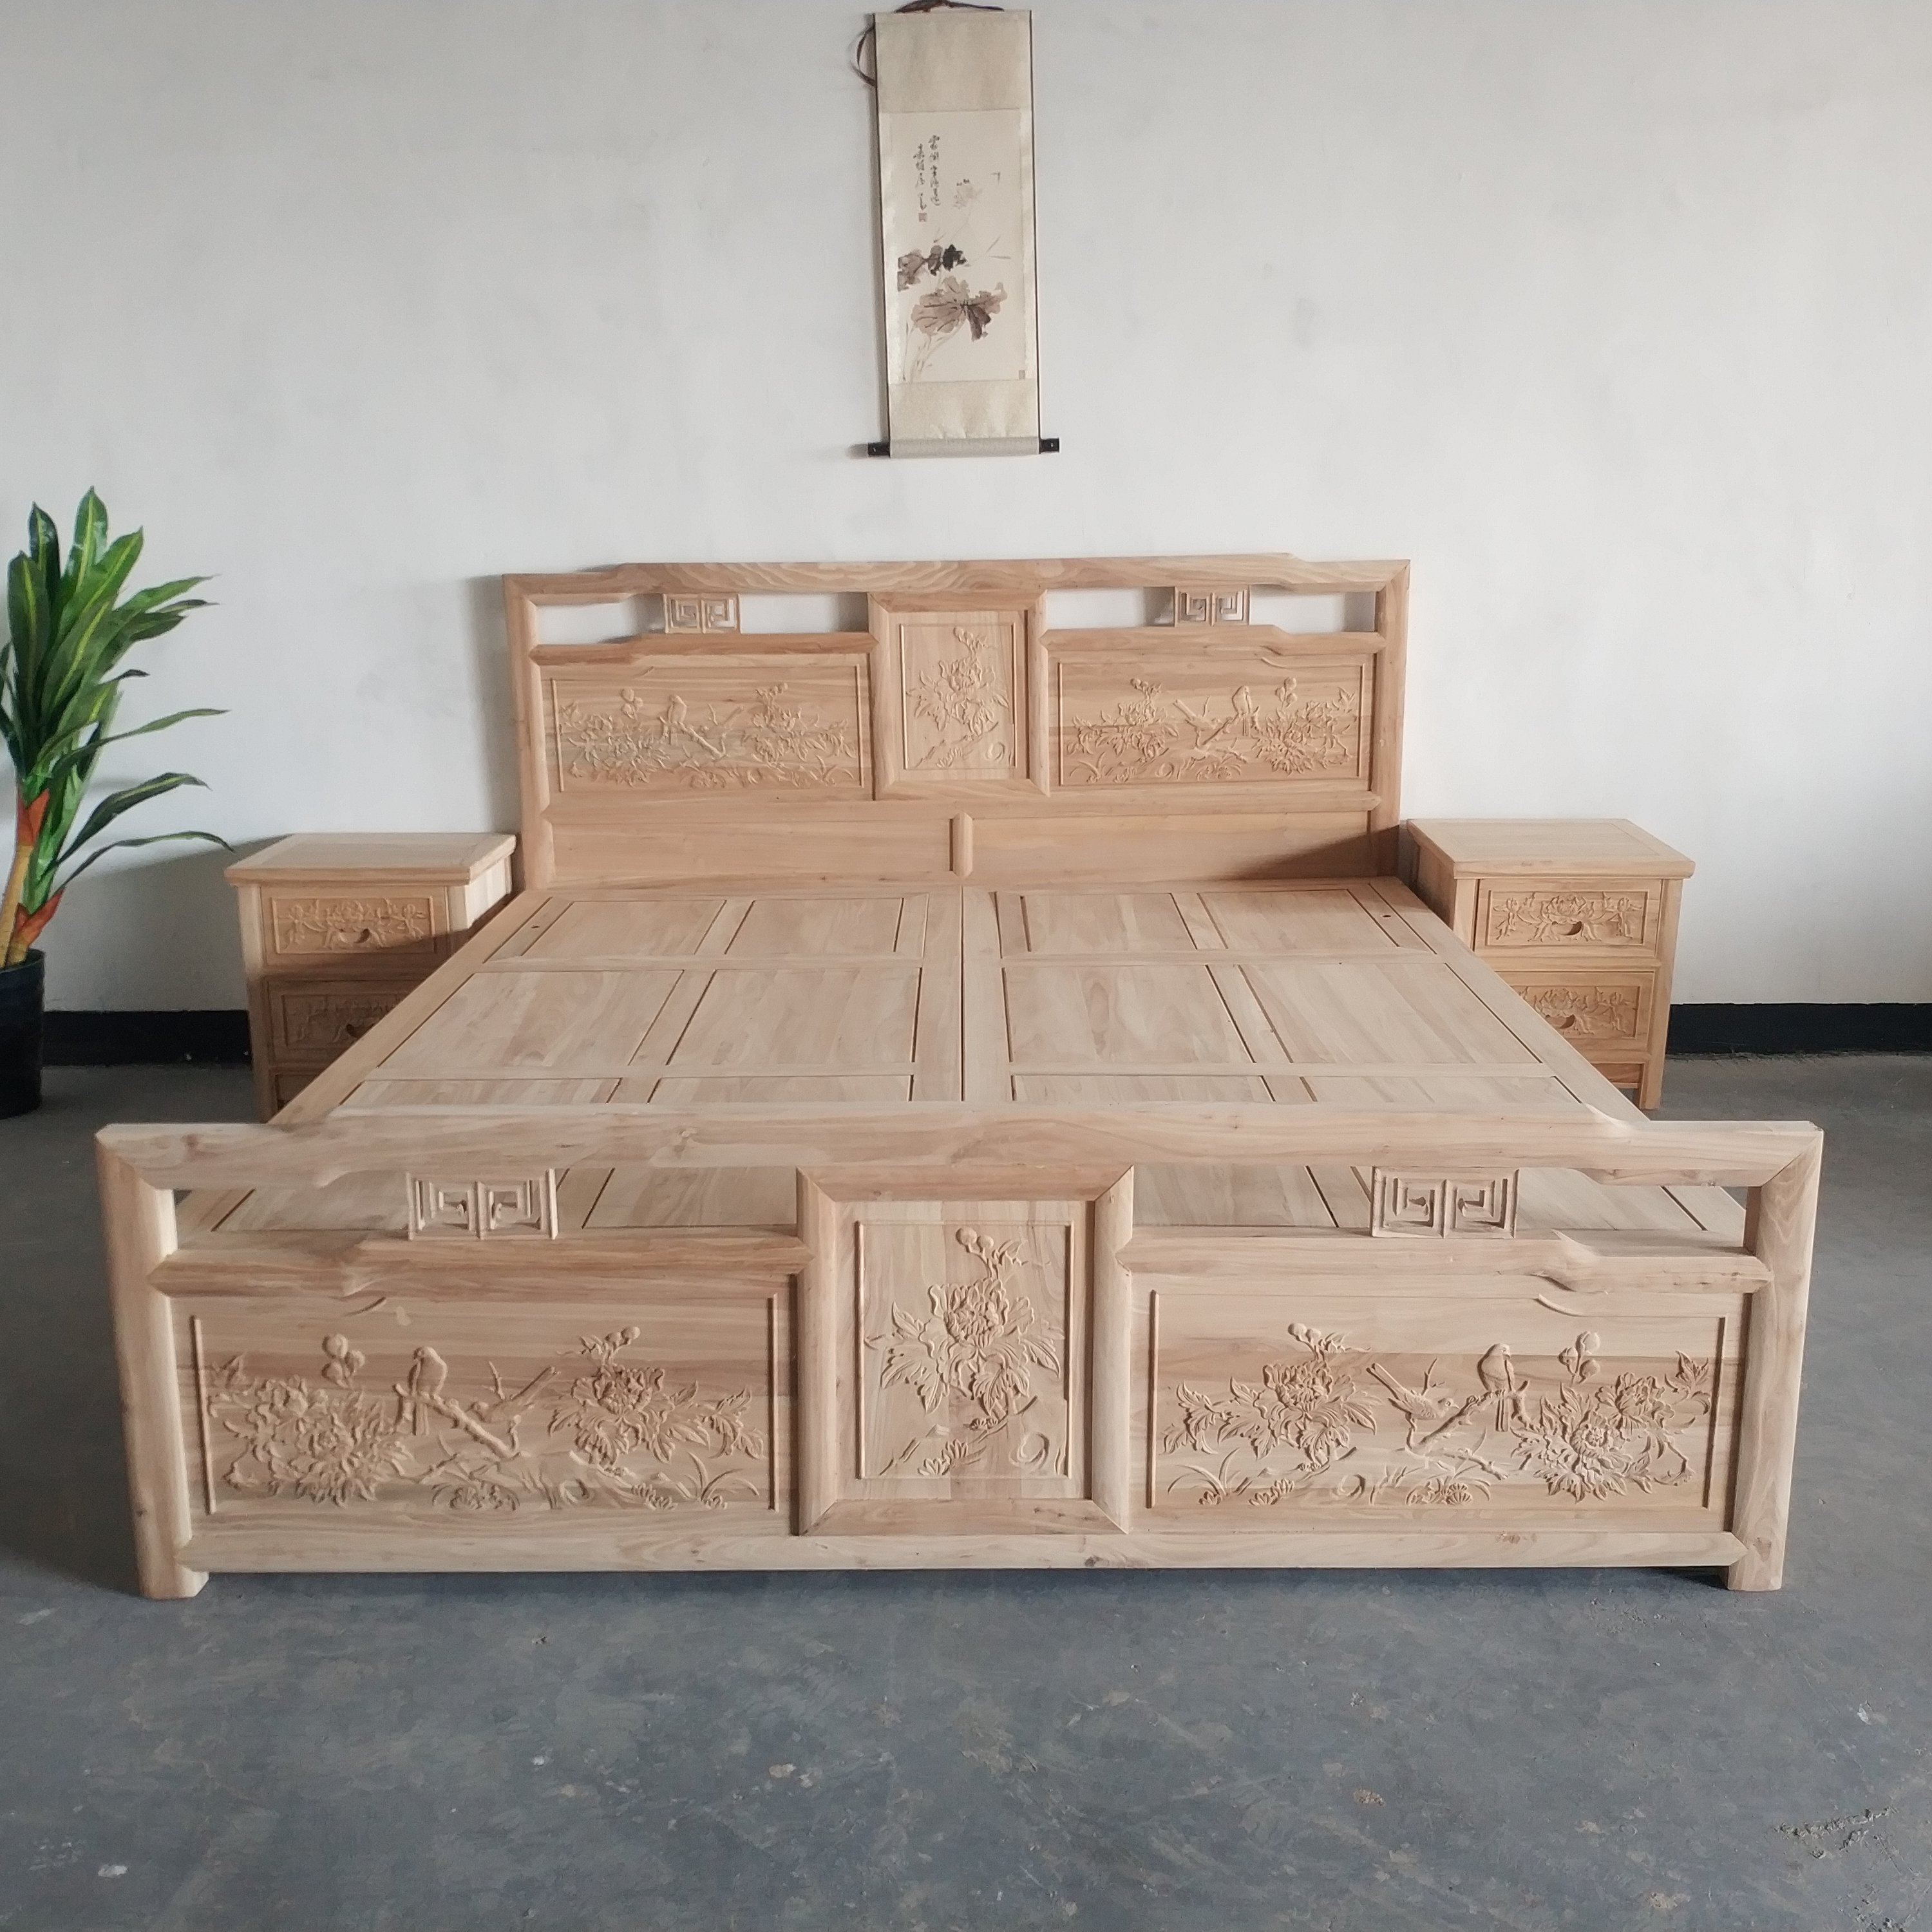 北方老榆木床全实木中式双人床床箱雕花仿古卧室家具婚床白茬白坯